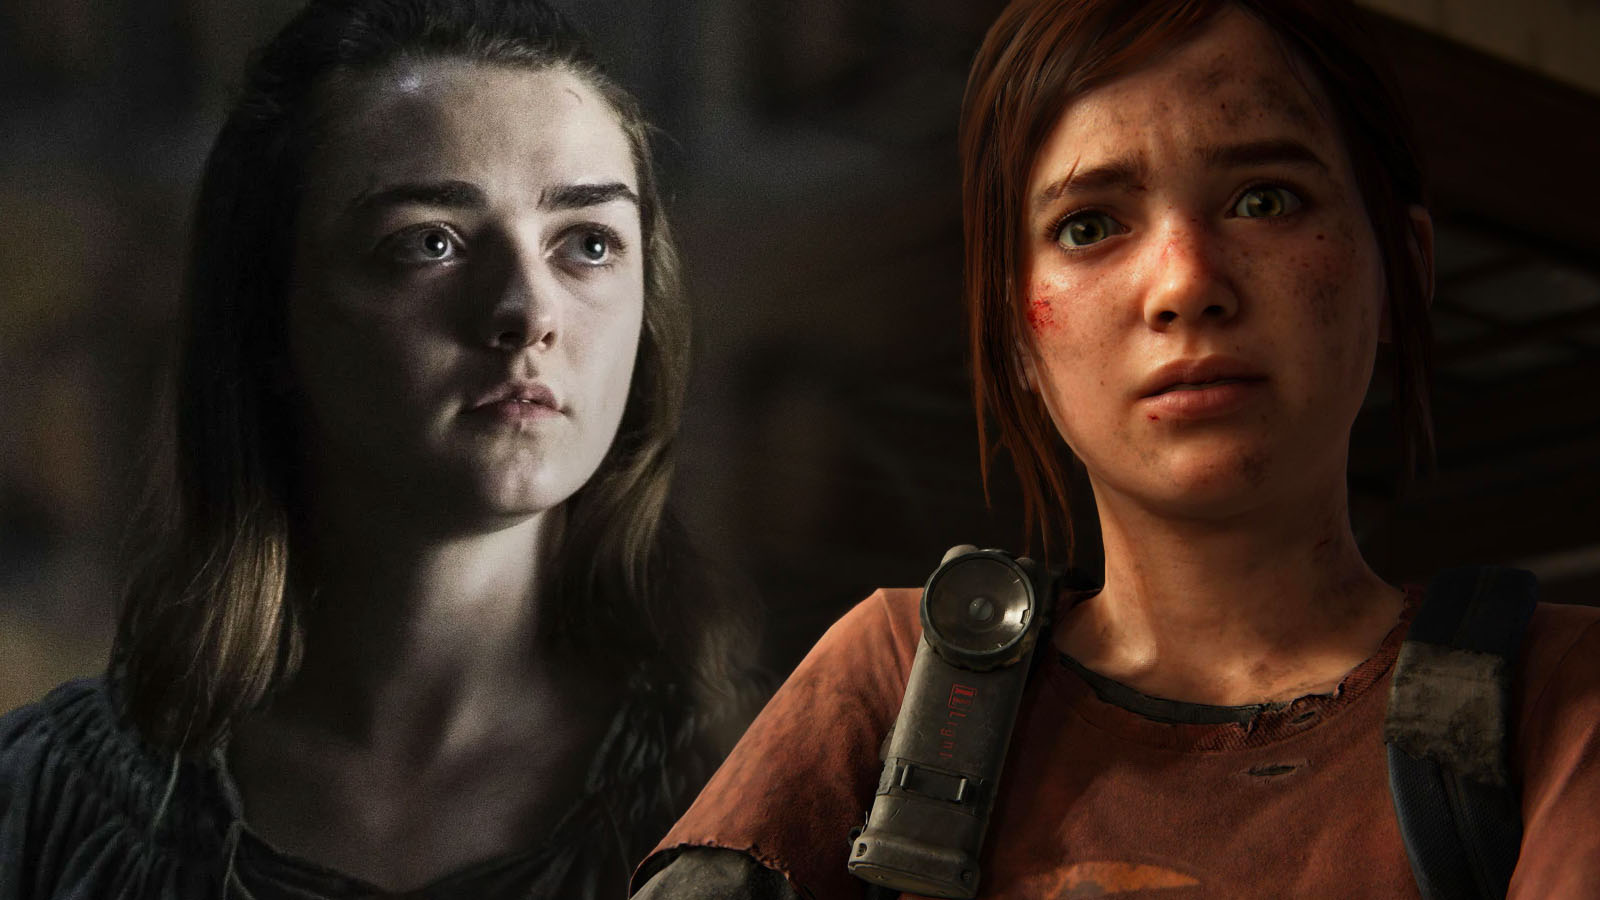 Maisie Williams diz que adoraria interpretar Ellie no filme The Last of Us  - Cinema com Rapadura